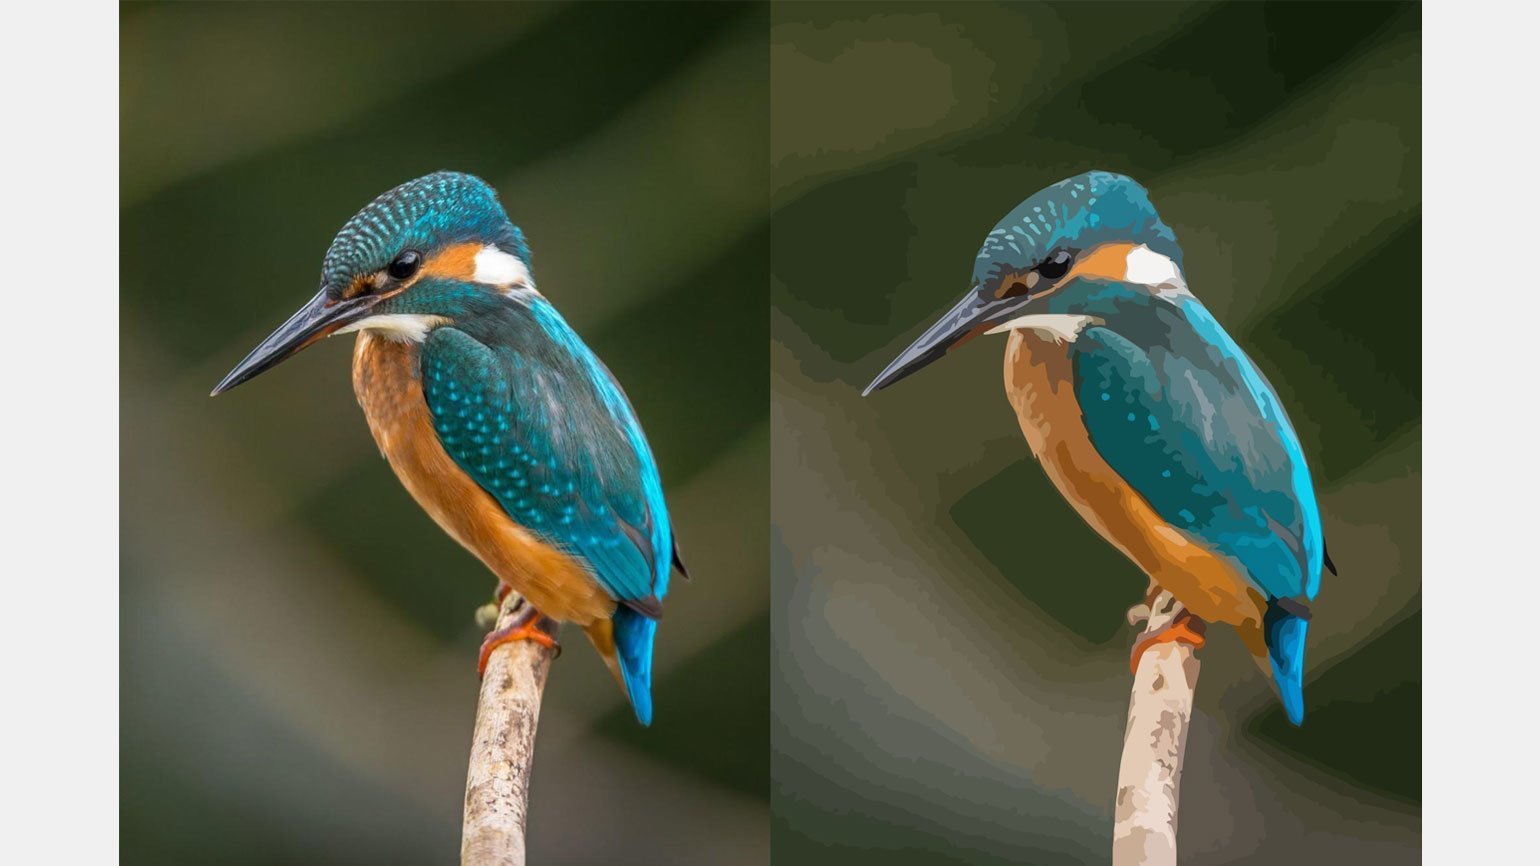 Фотография птицы — растровая графика с хорошими цветовыми переходами. Фотография птицы, переведённая в векторный формат, — все цвета стали тусклее, а цветовые переходы хуже.